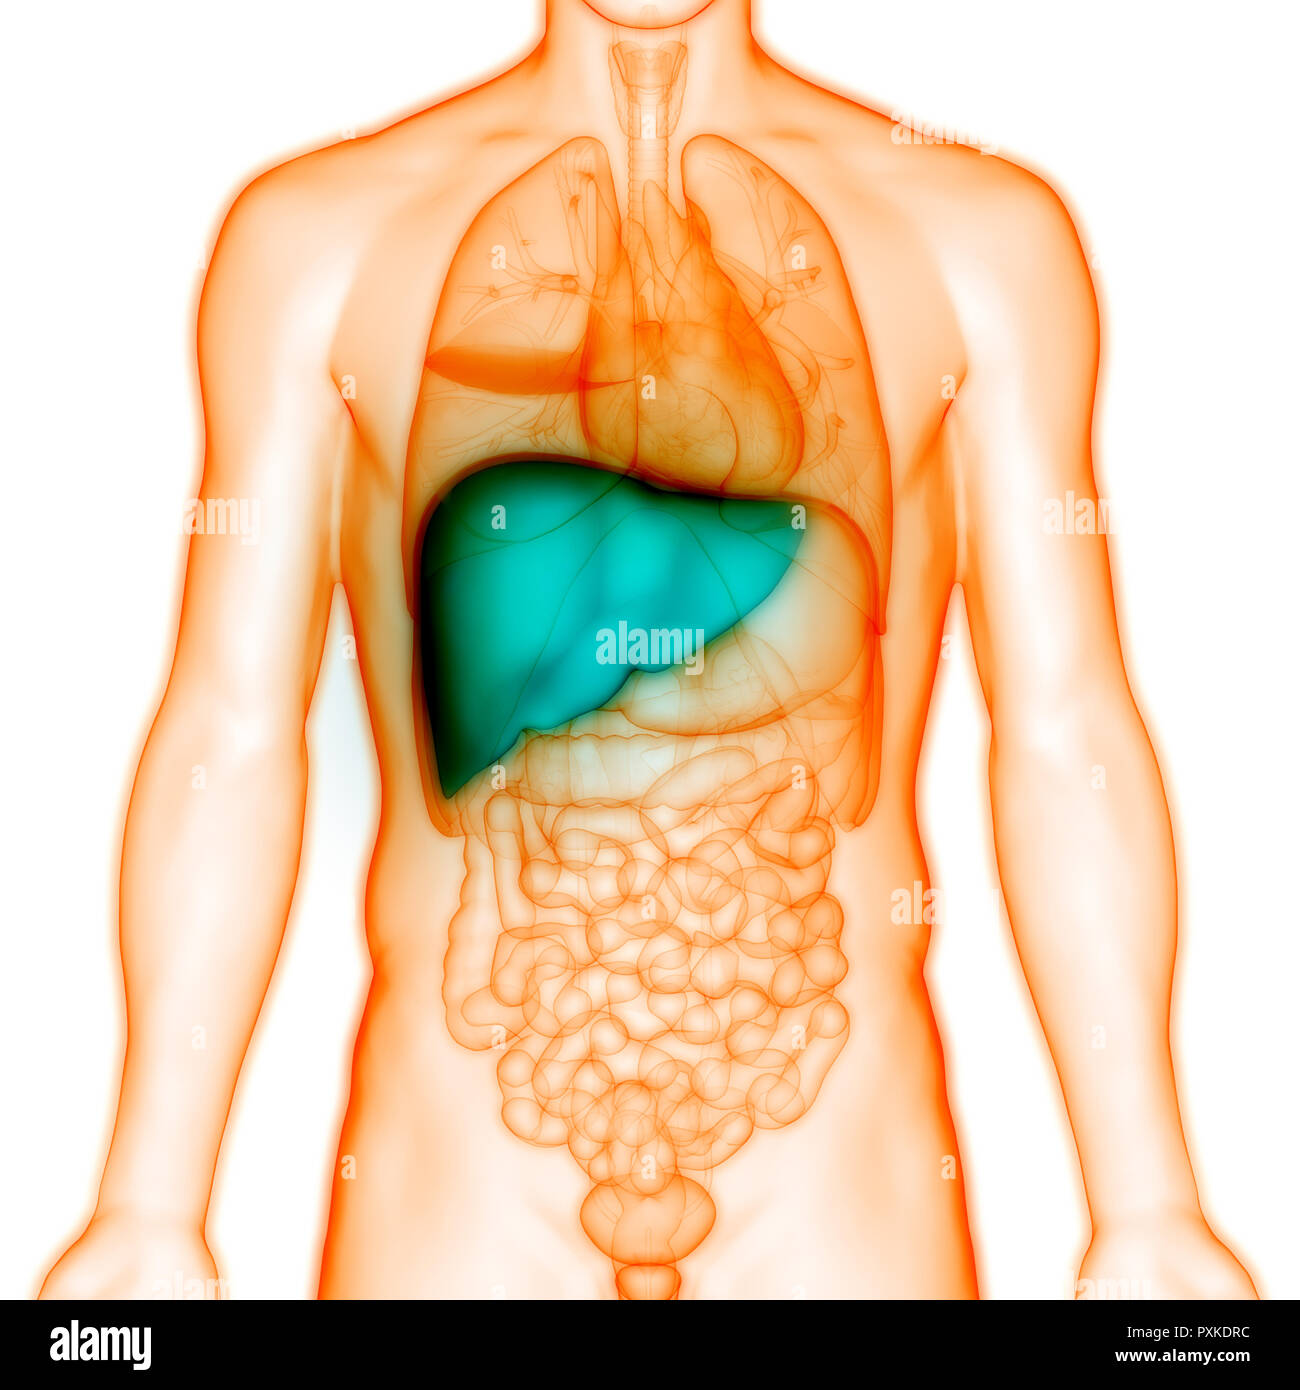 Печень у человека расположена. Расположение печени в организме. Внутренние органы человека печень. Анатомическое расположение печени.